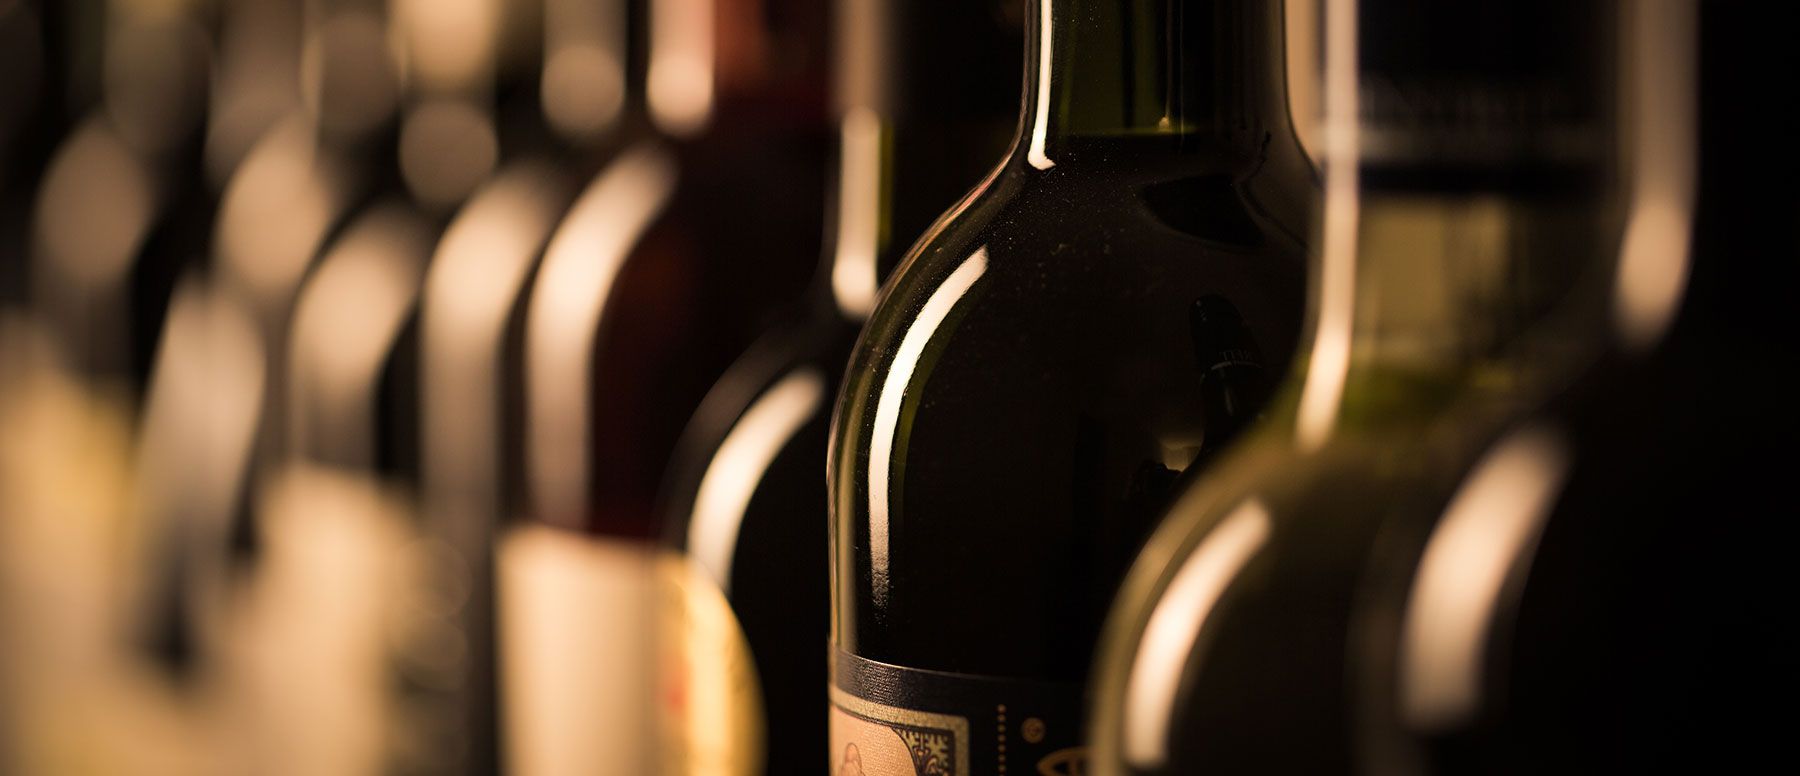 Quali sono i migliori vini italiani da collezione? Classifica e prezzi